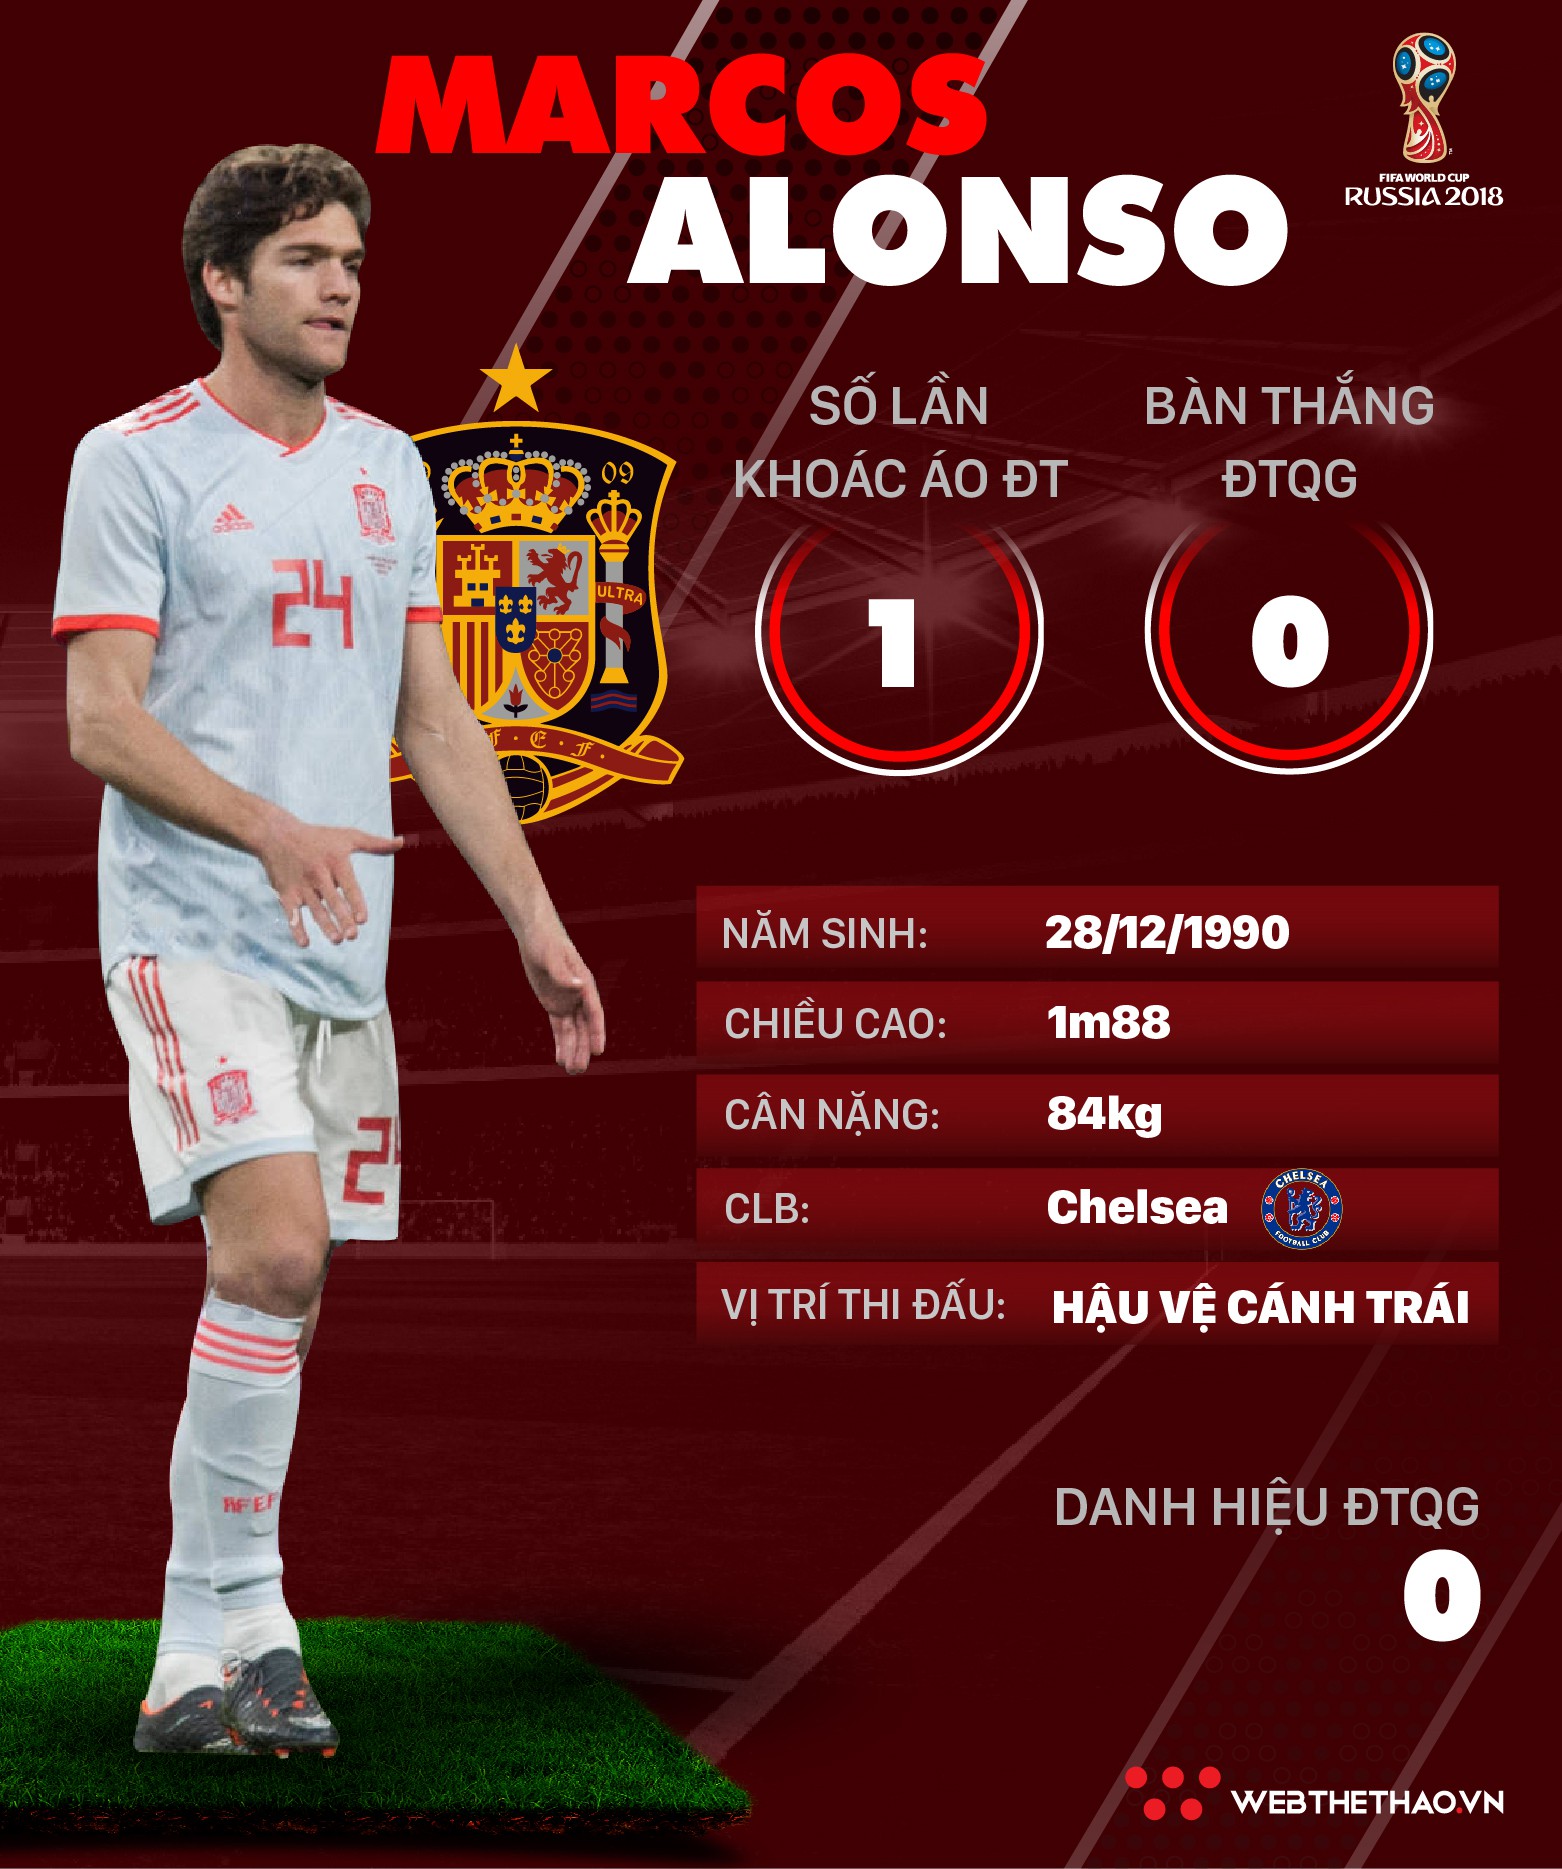 Thông tin cầu thủ Marcos Alonso của ĐT Tây Ban Nha dự World Cup 2018 - Ảnh 1.